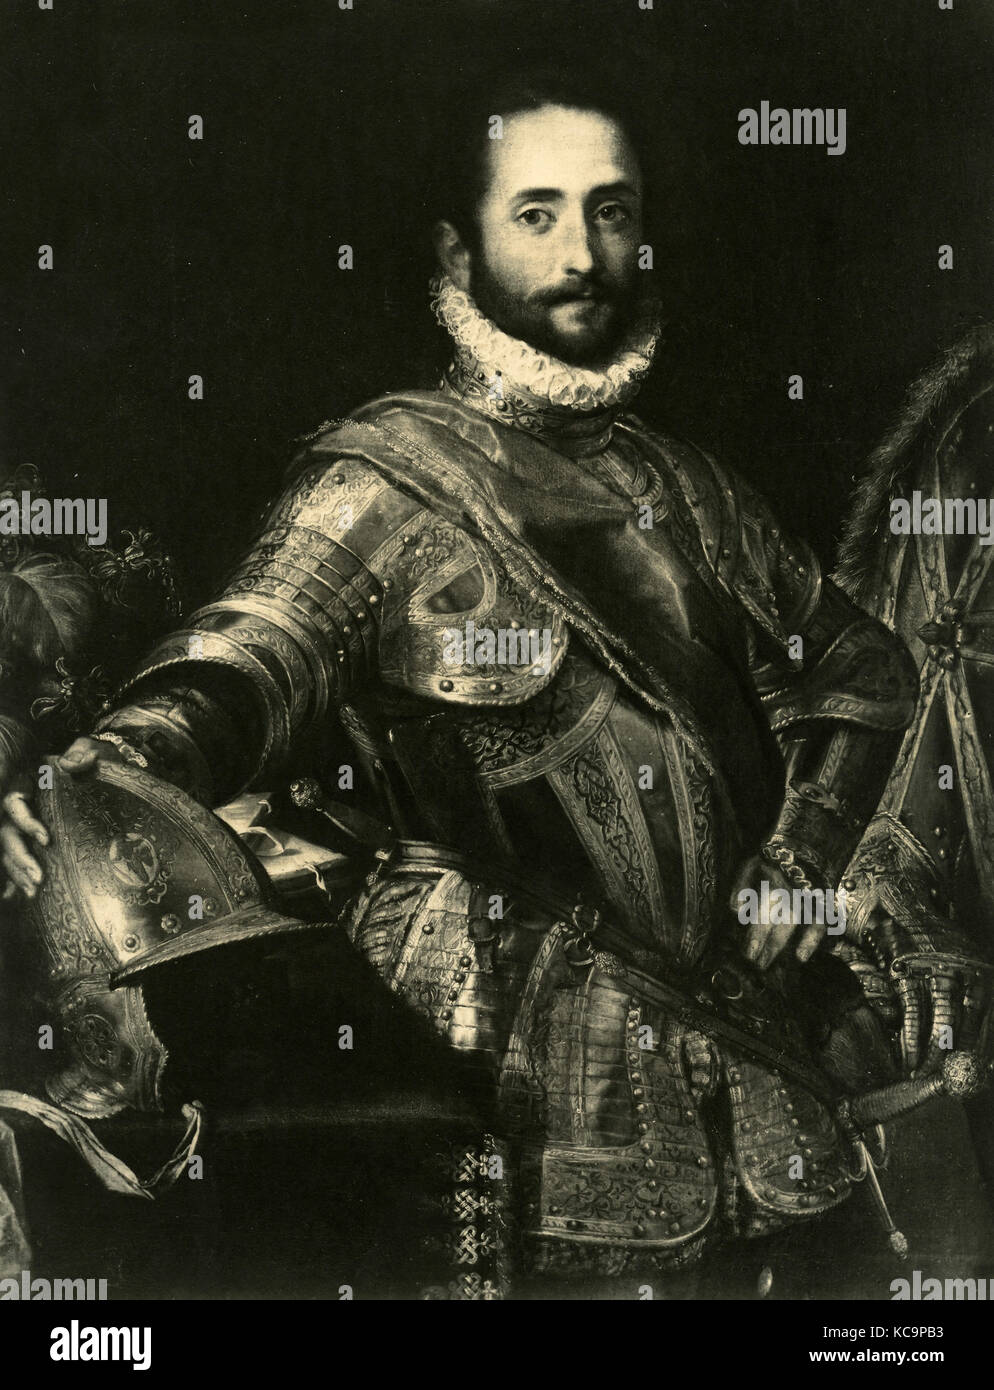 Francesco Maria I della Rovere, Duke of Urbino, painting by Baroccio Stock Photo